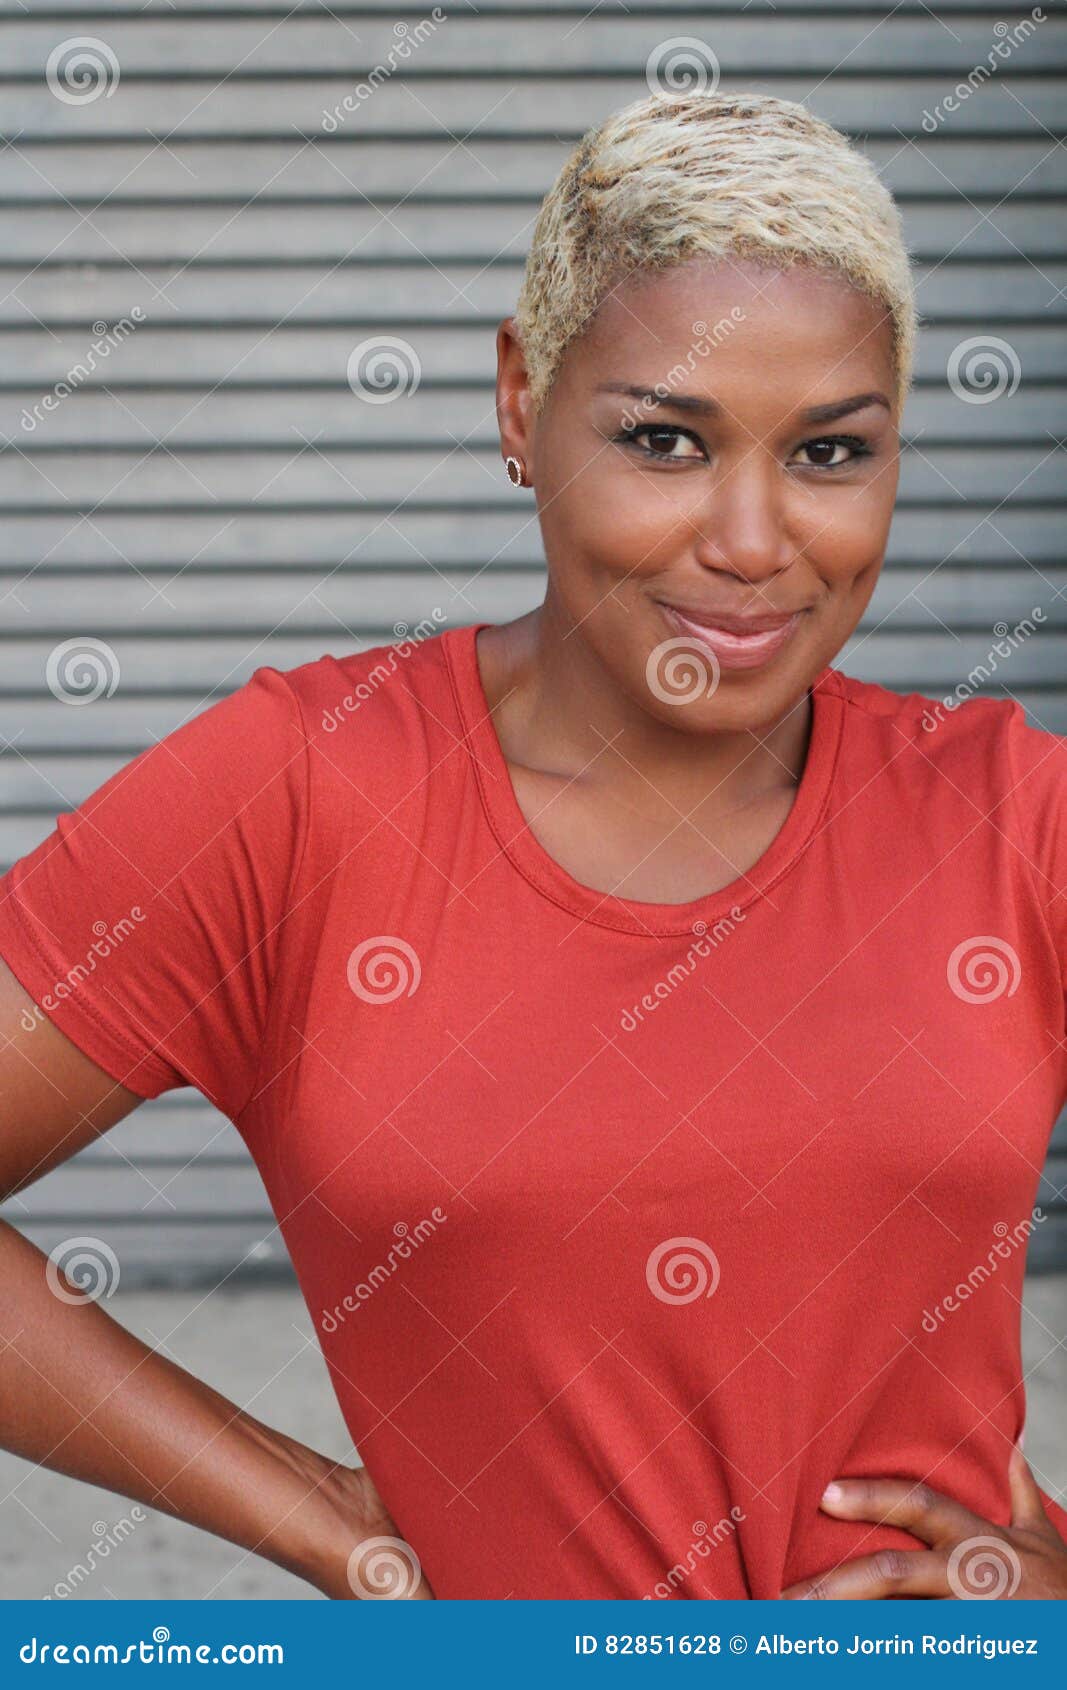 Femme Africaine Avec La Coupe Moderne De Cheveux Courts Photo stock - Image du coupe ...